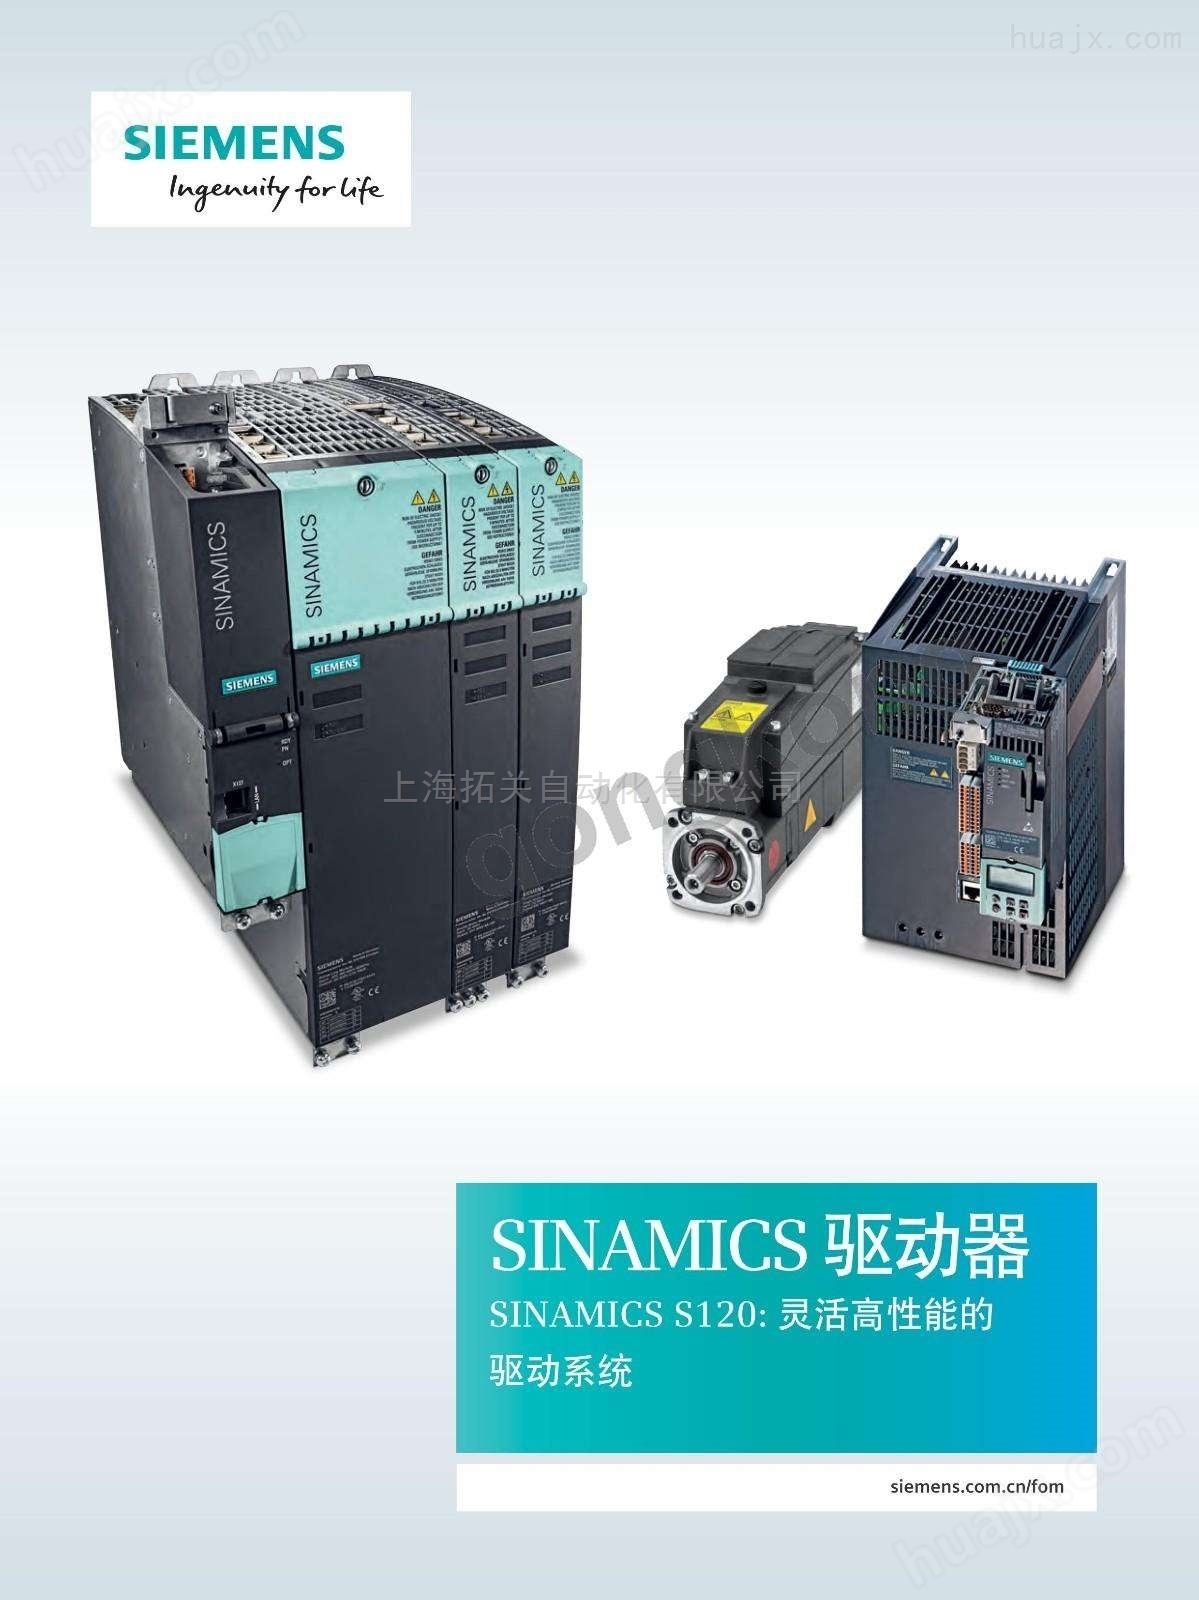 西门子S7-400电源模块（华北地区）代理商